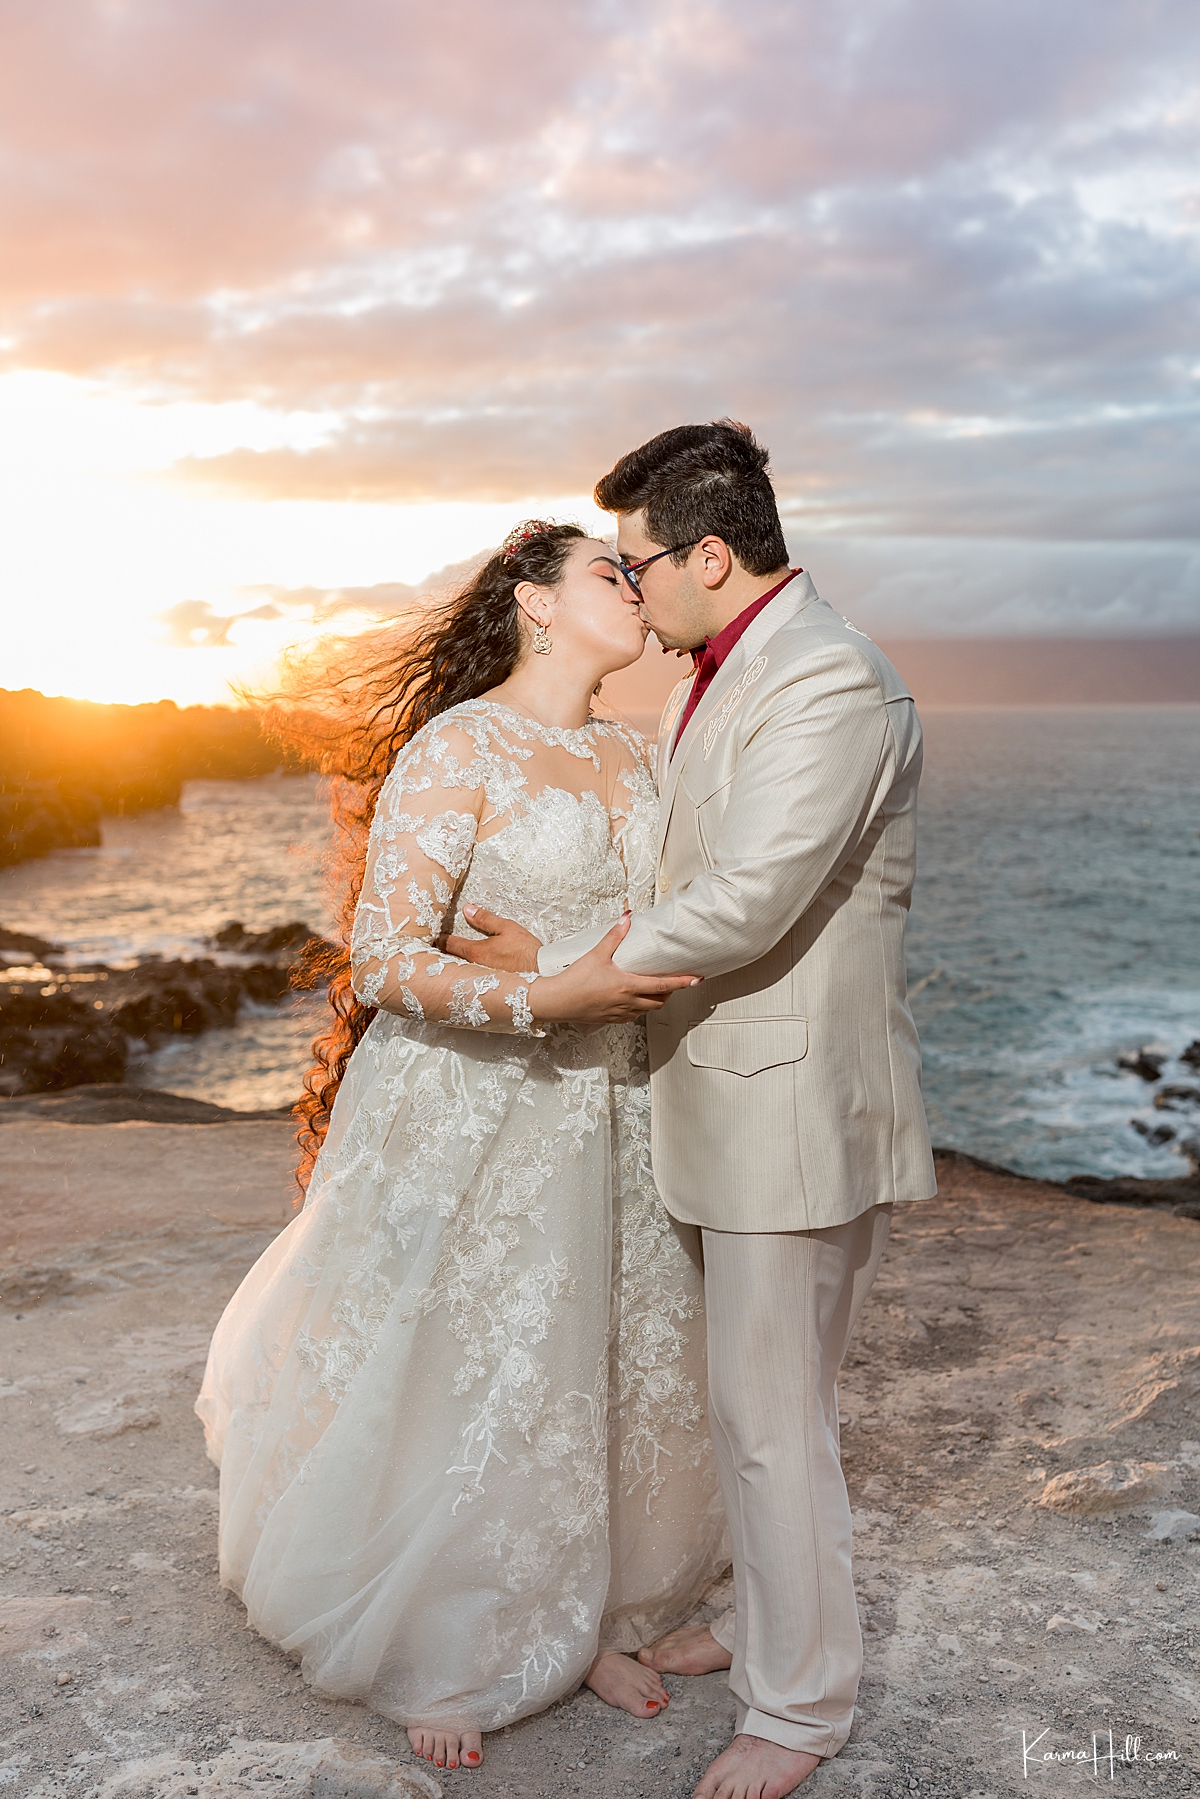 Honeymoon Portraits in Hawaii 